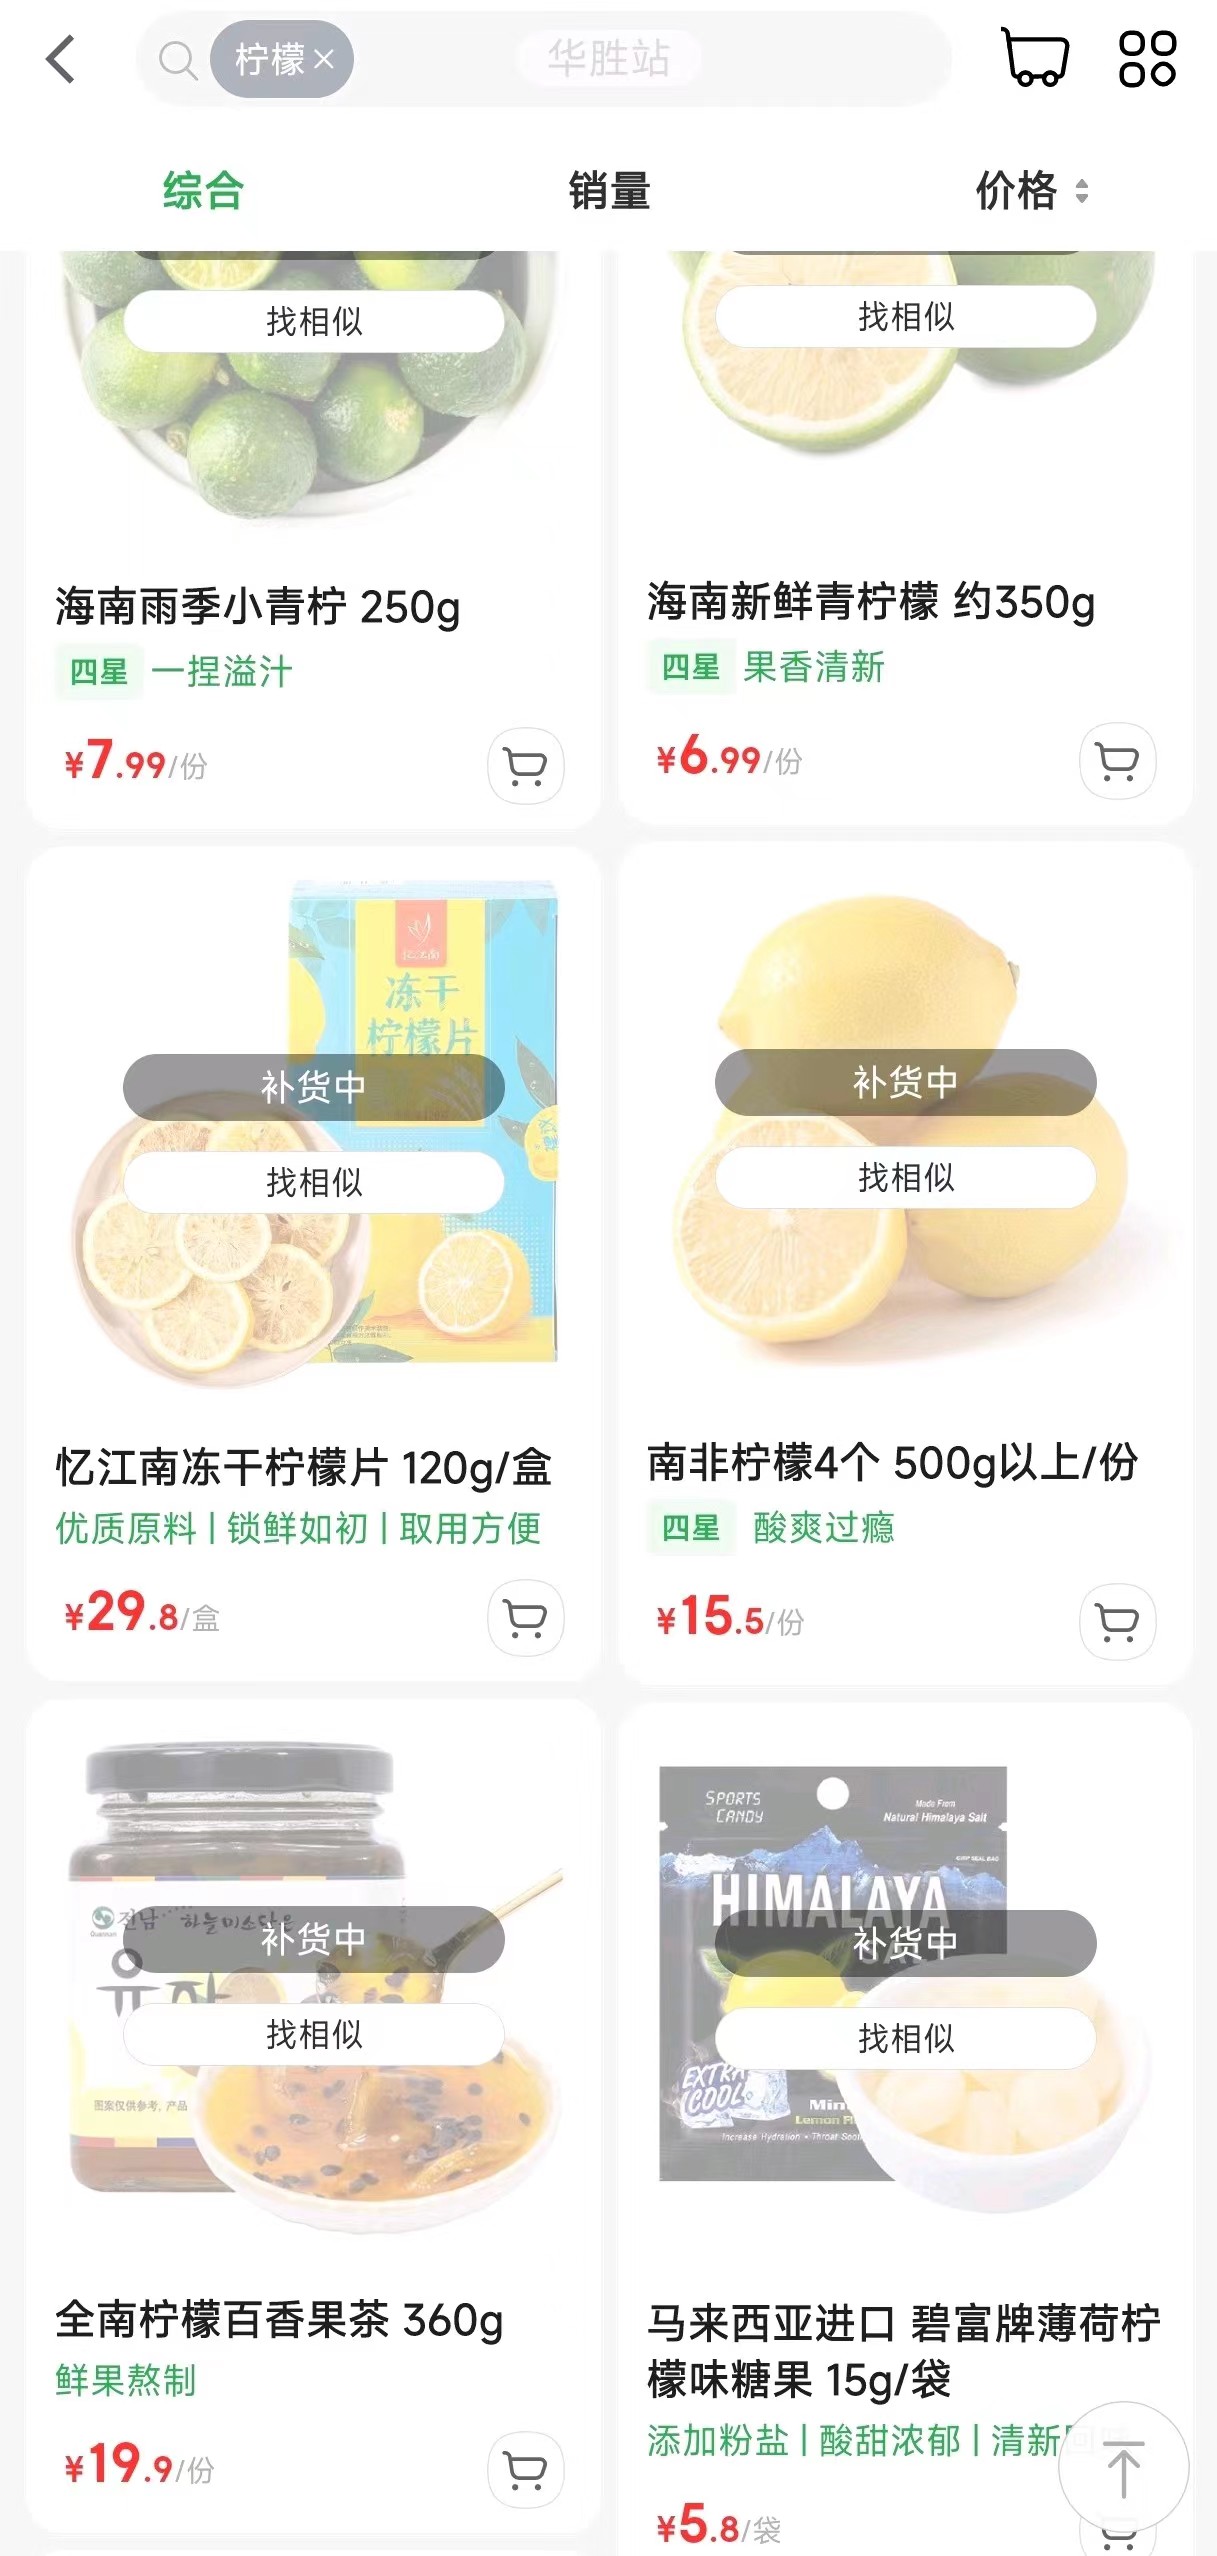 叮咚买菜平台上海部分地区柠檬及柠檬相关产品均已售罄